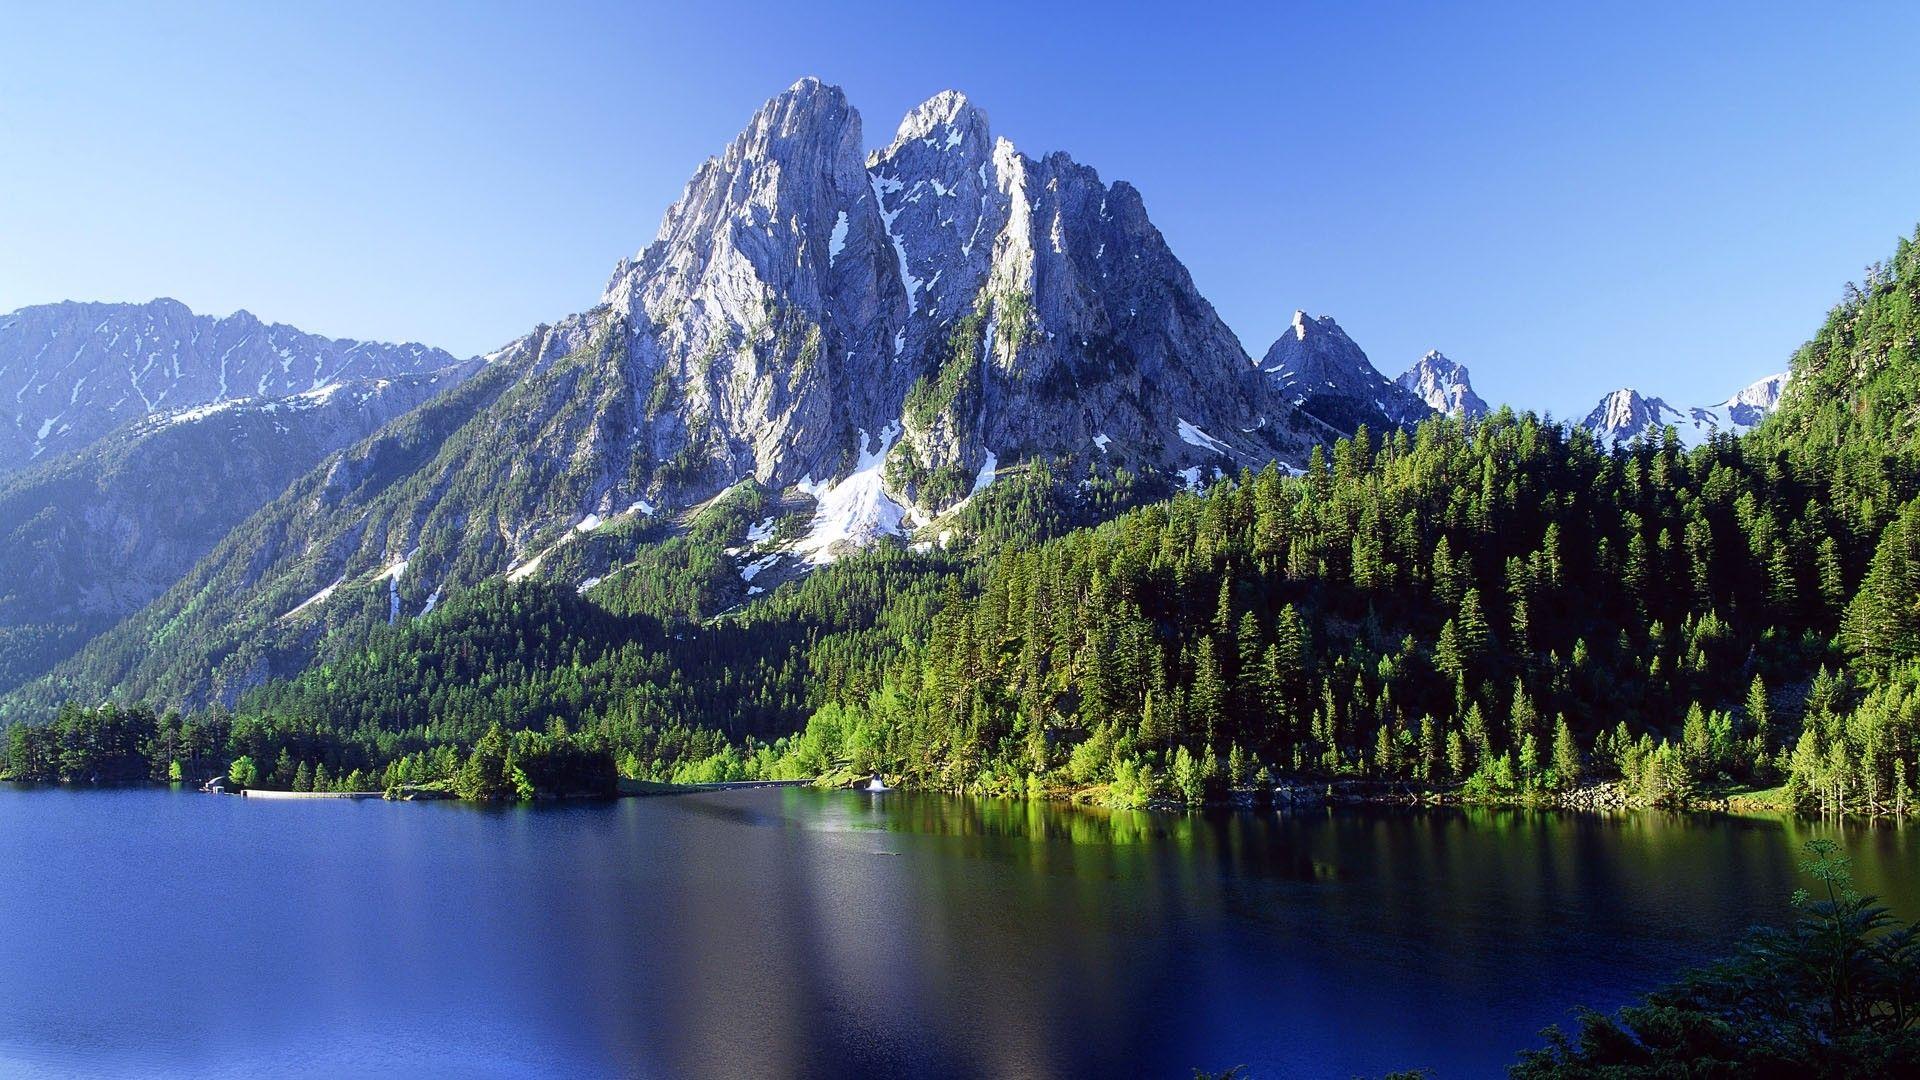 Phong cảnh những dãy núi đồi bao quanh hồ lớn 45